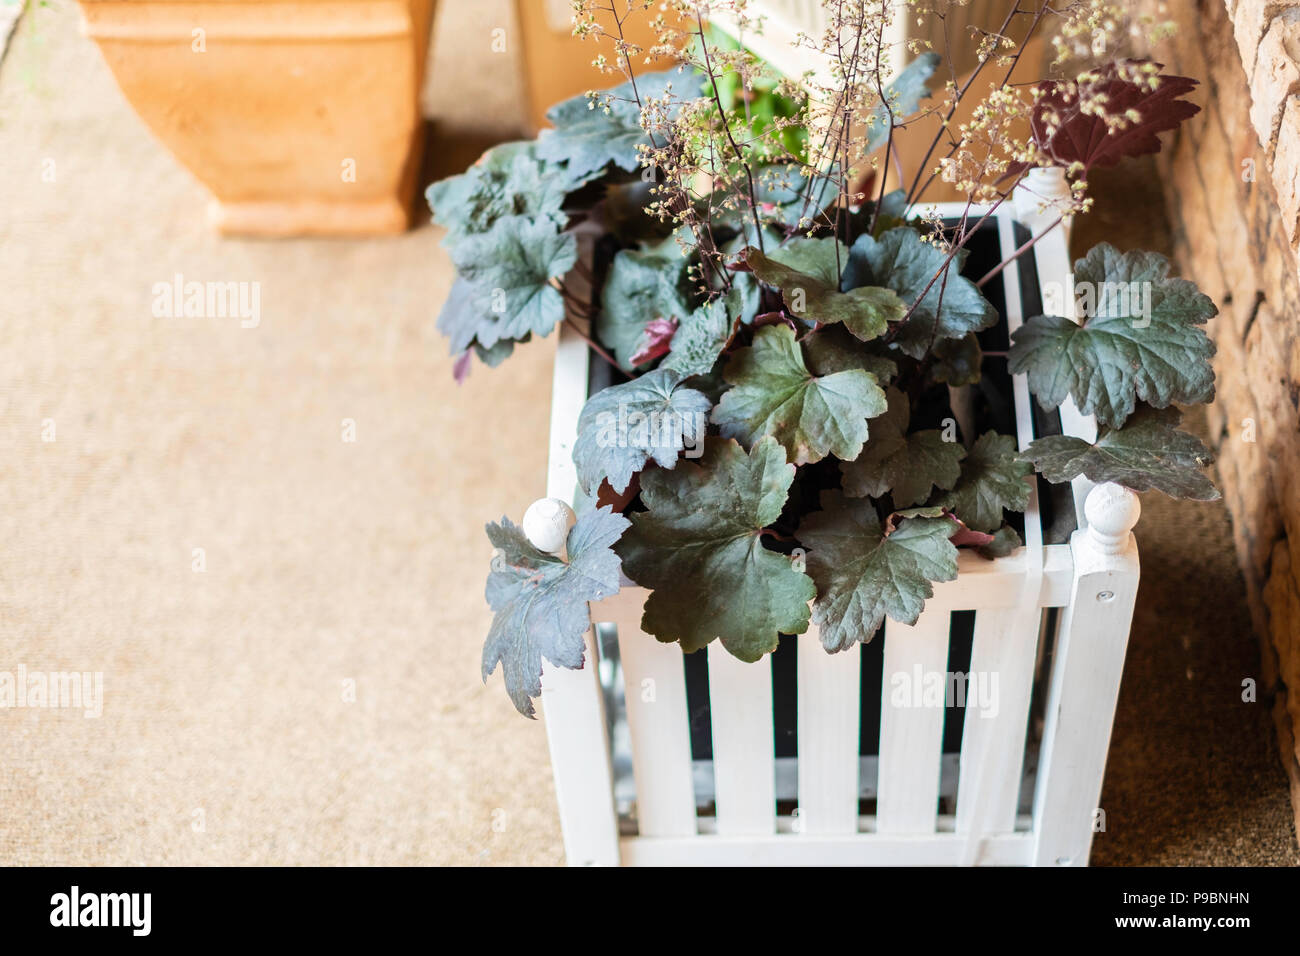 Coral Bell impianto, Heuchera ibrido, con speso i fiori in un bianco a doghe di legno nella casella della piantatrice seduto su un portico anteriore. Foto Stock